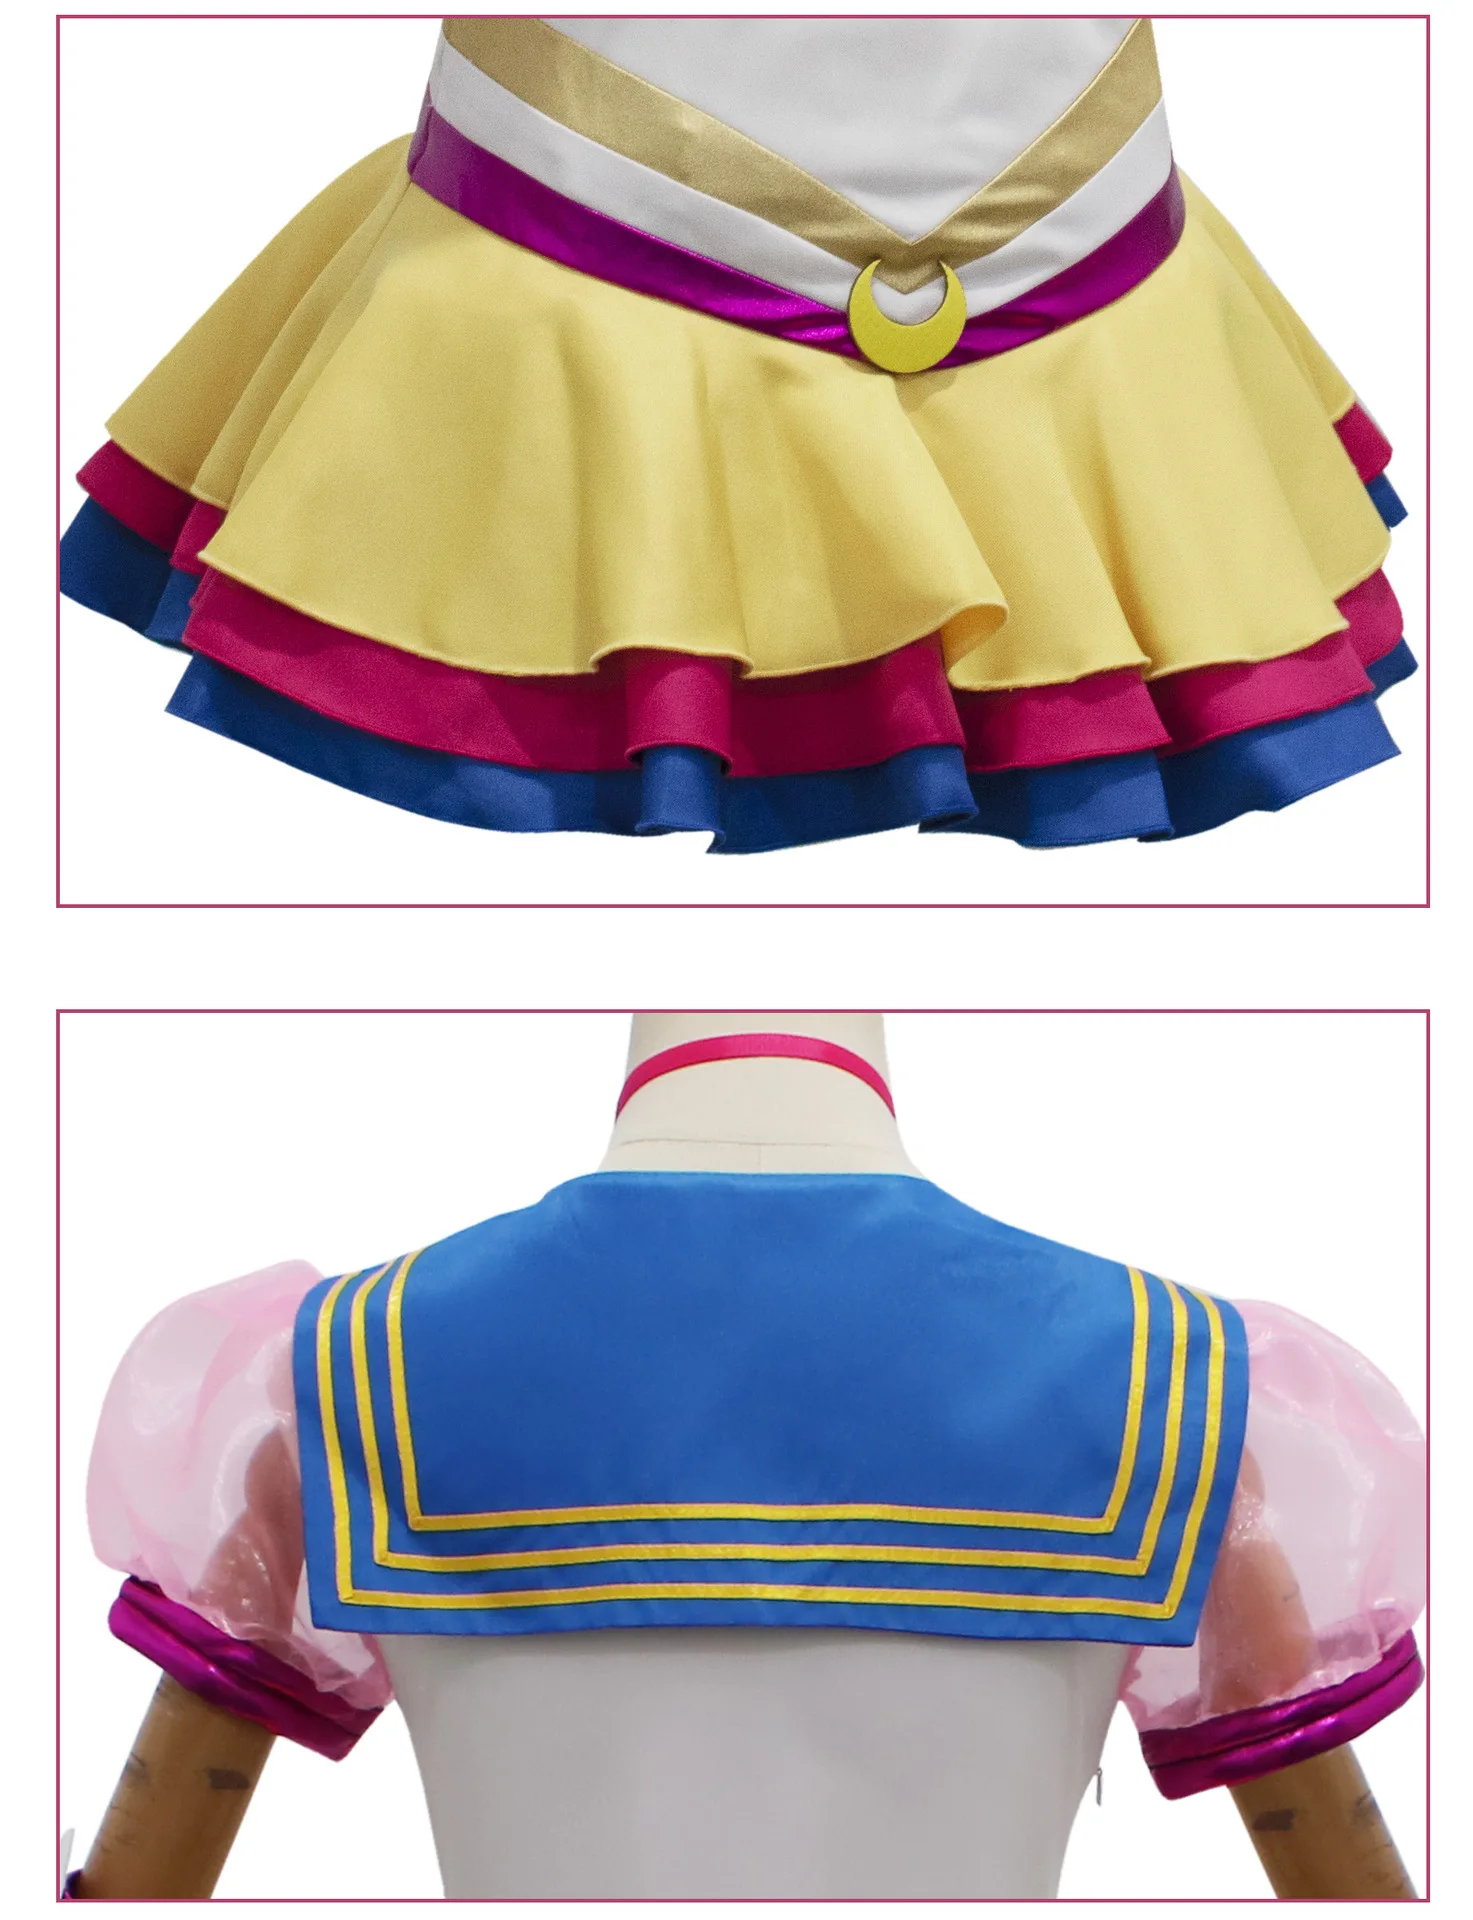 S79f5542b03944cf7821ec0d2379b68e1k - Sailor Moon Store